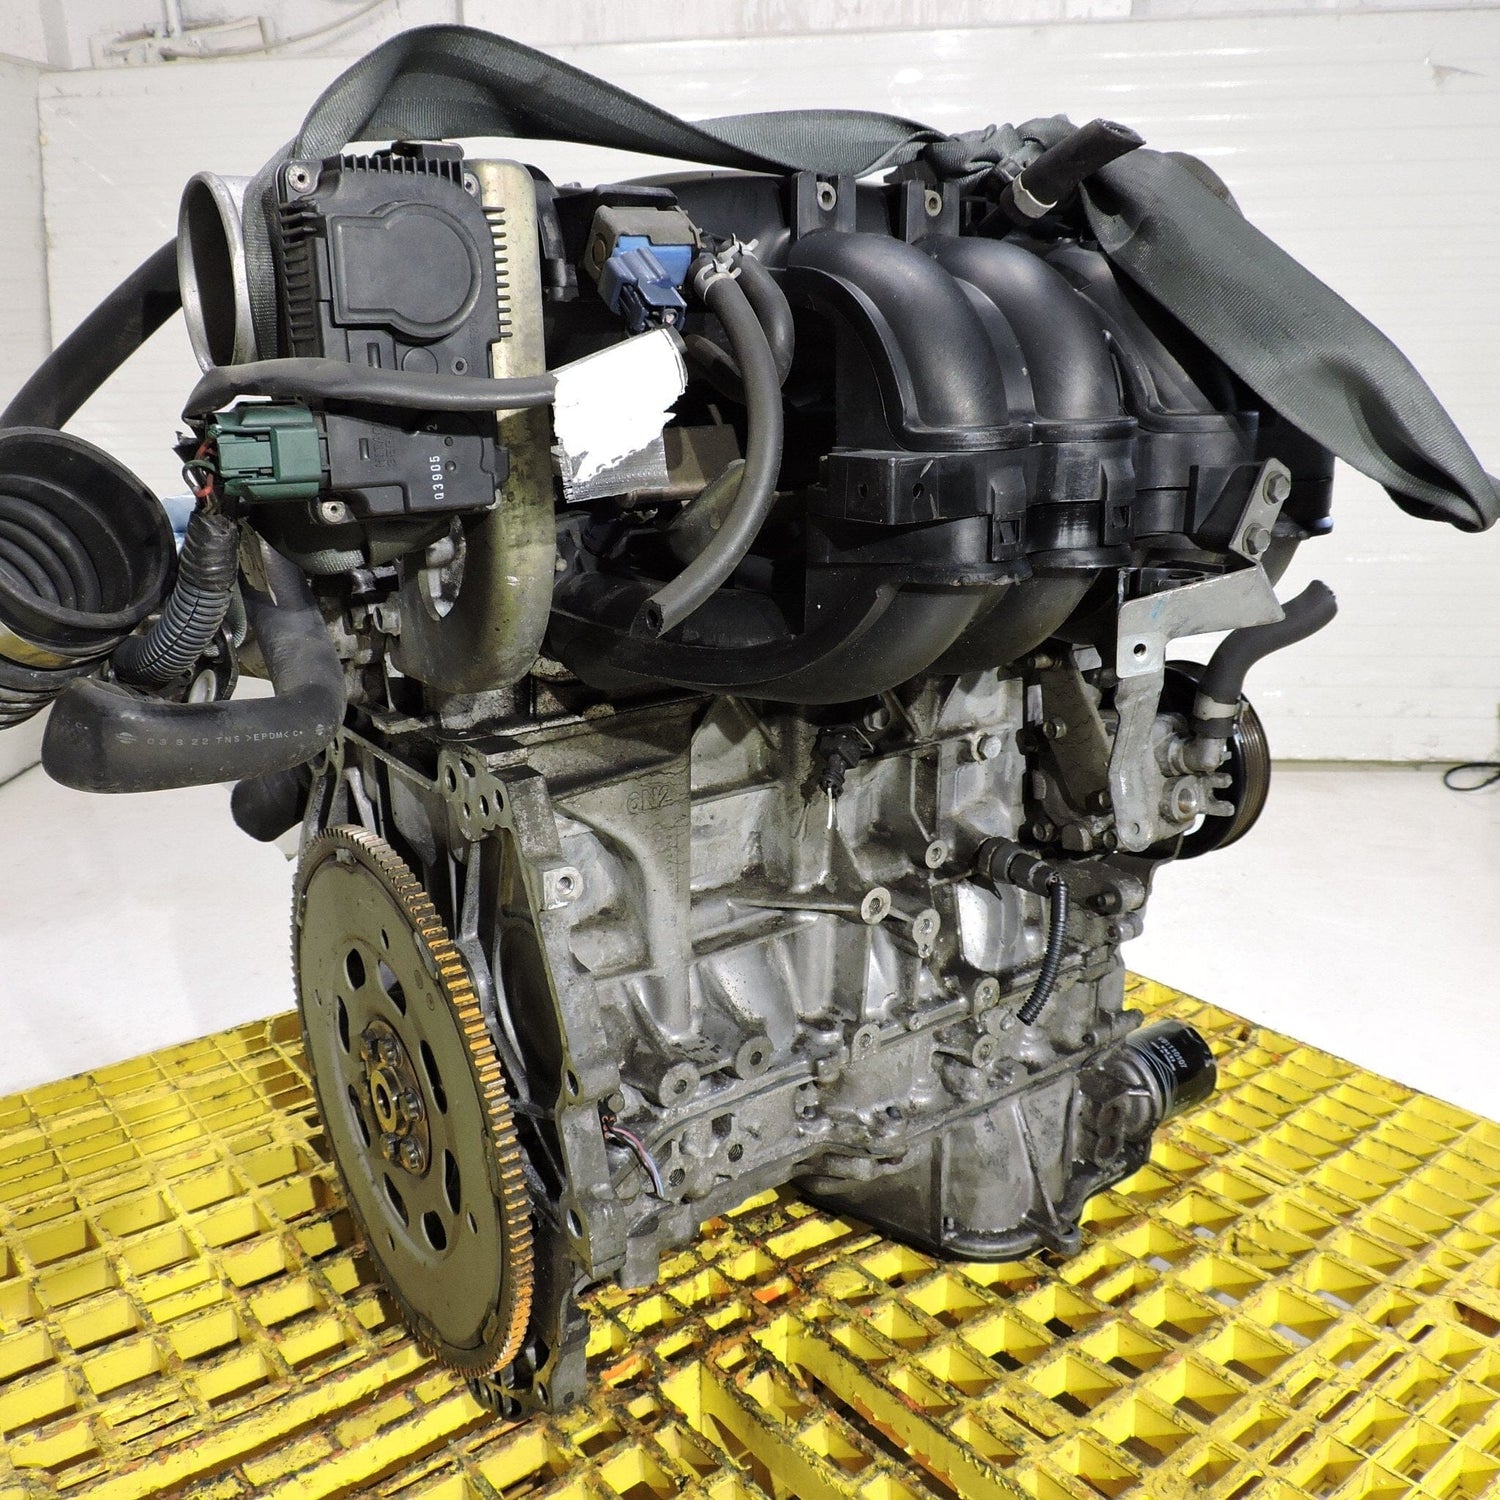 Nissan Altima 2002-2006 JDM Replacement For 2.5L Engine - QR20DE